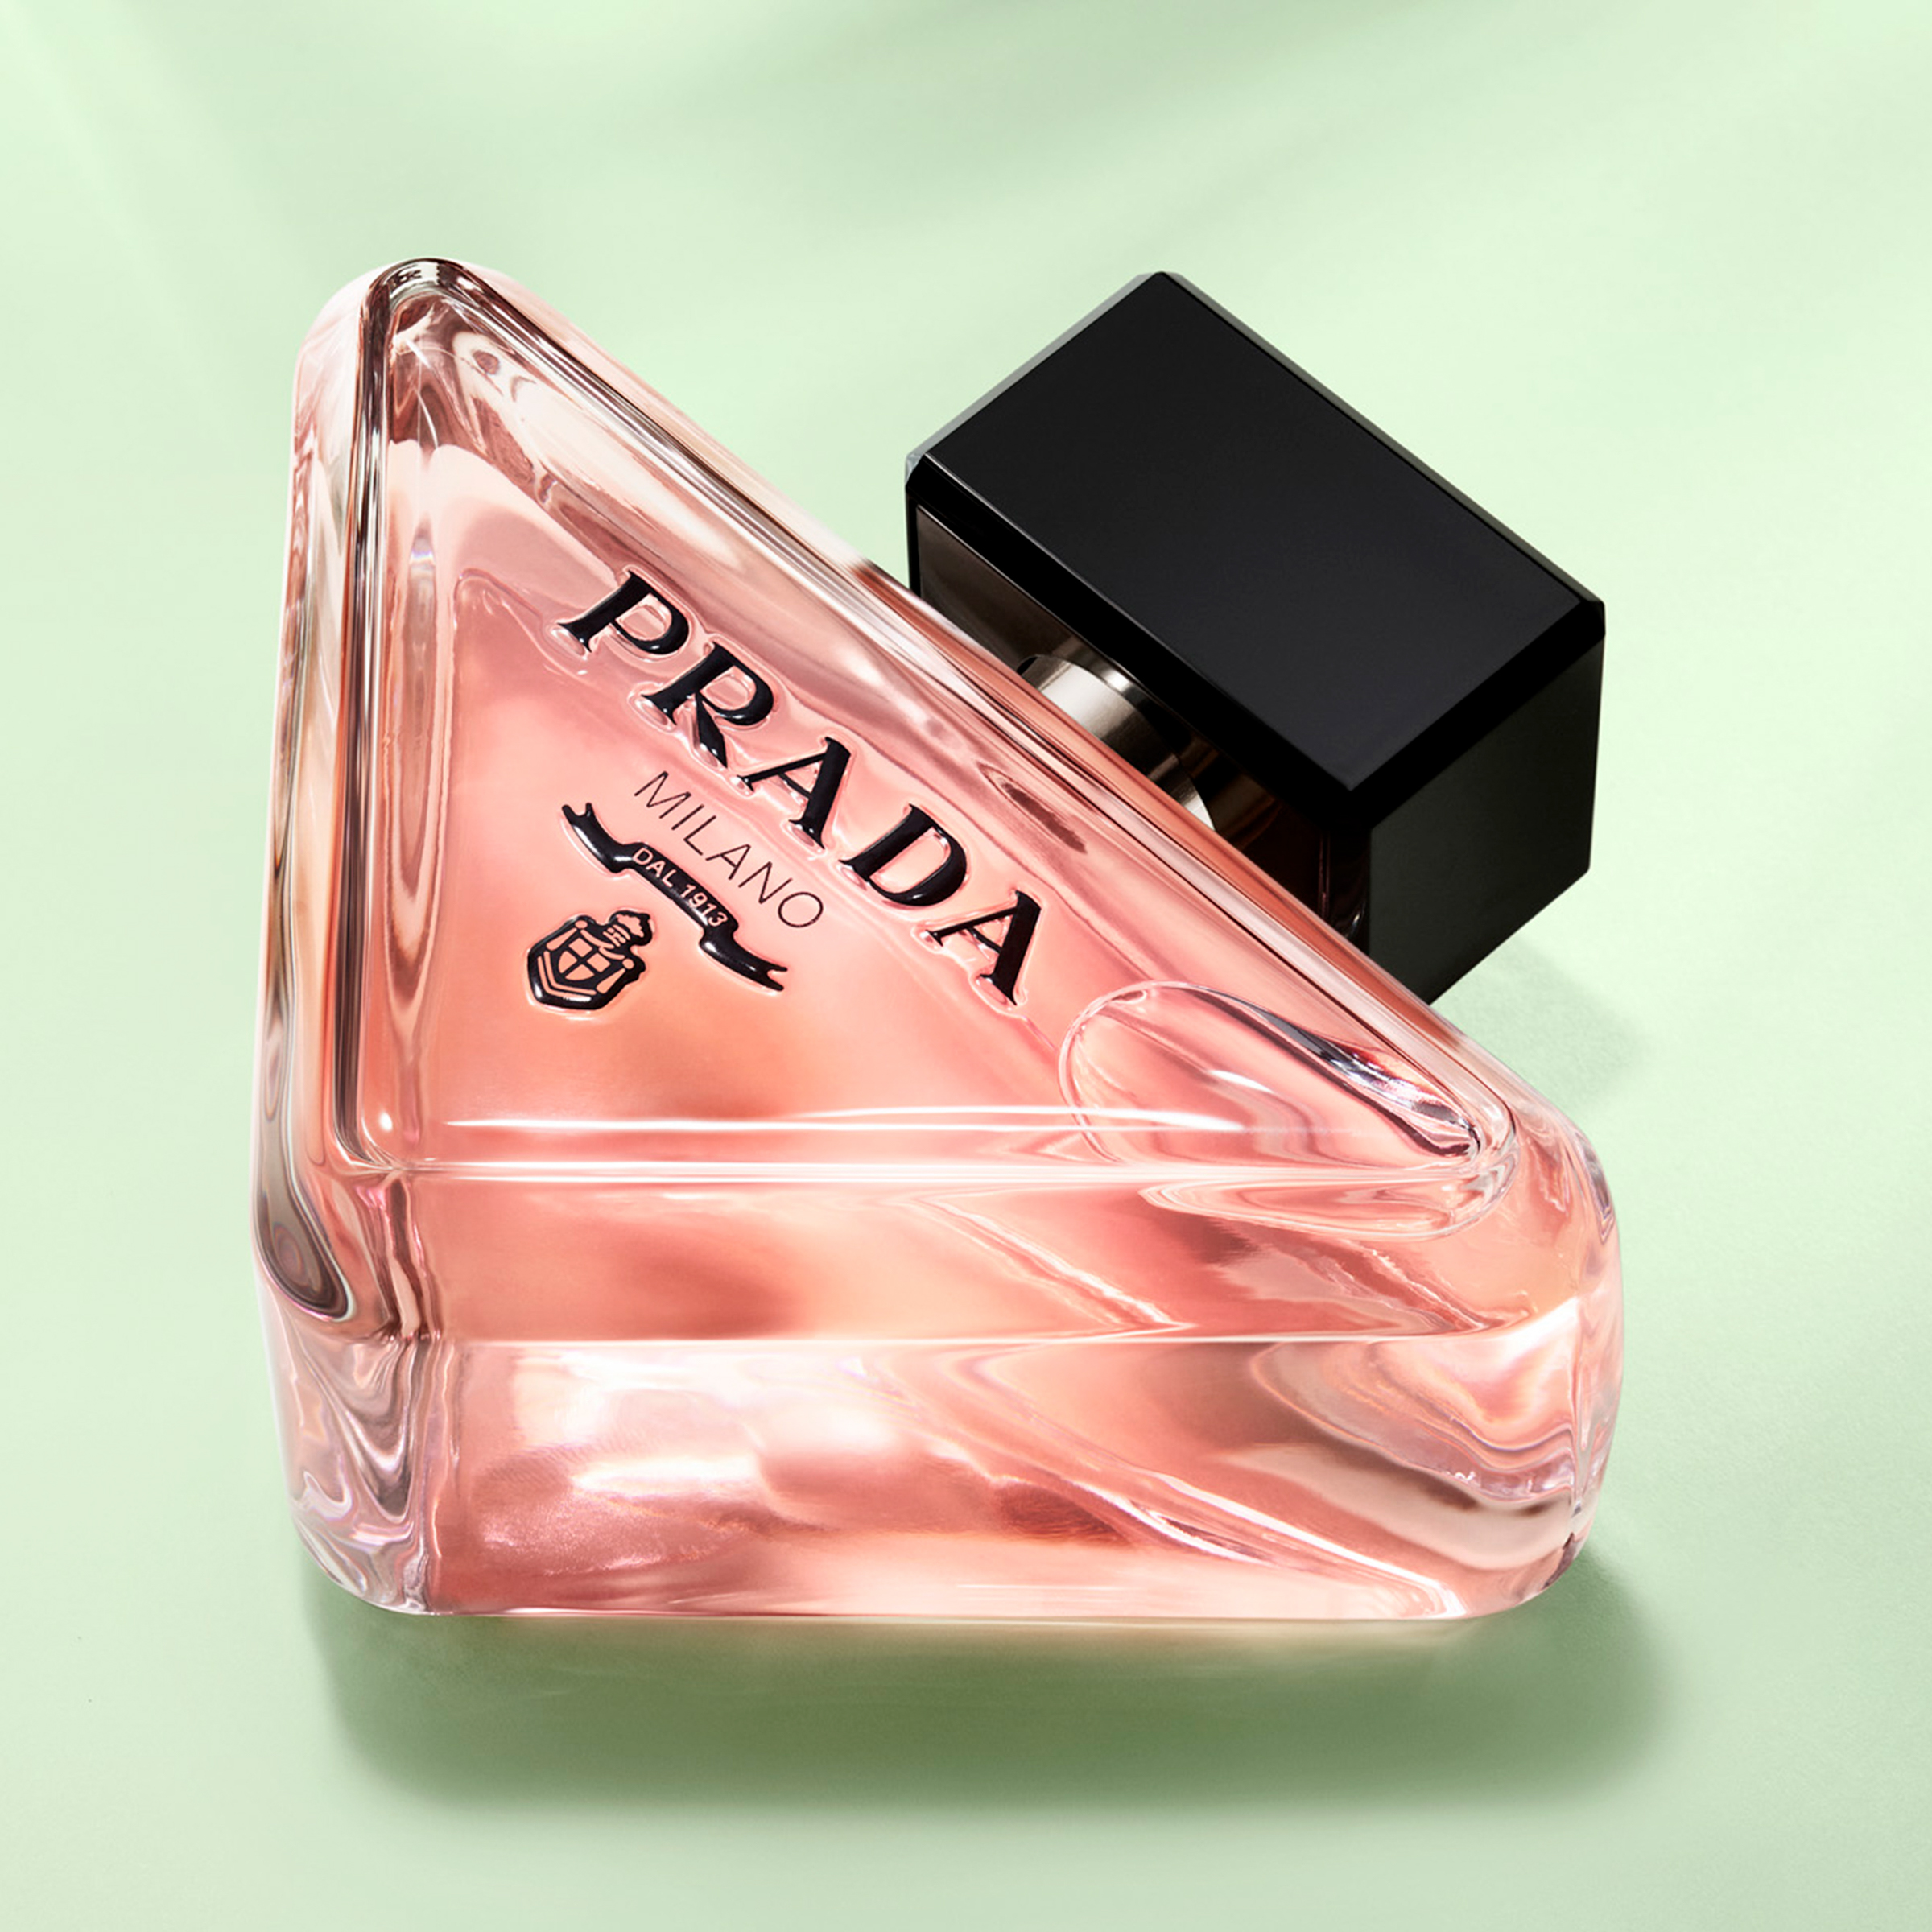 「プラダ パラドックス オーデパルファム」が日本上陸 “矛盾”が持つ美を表現した香り